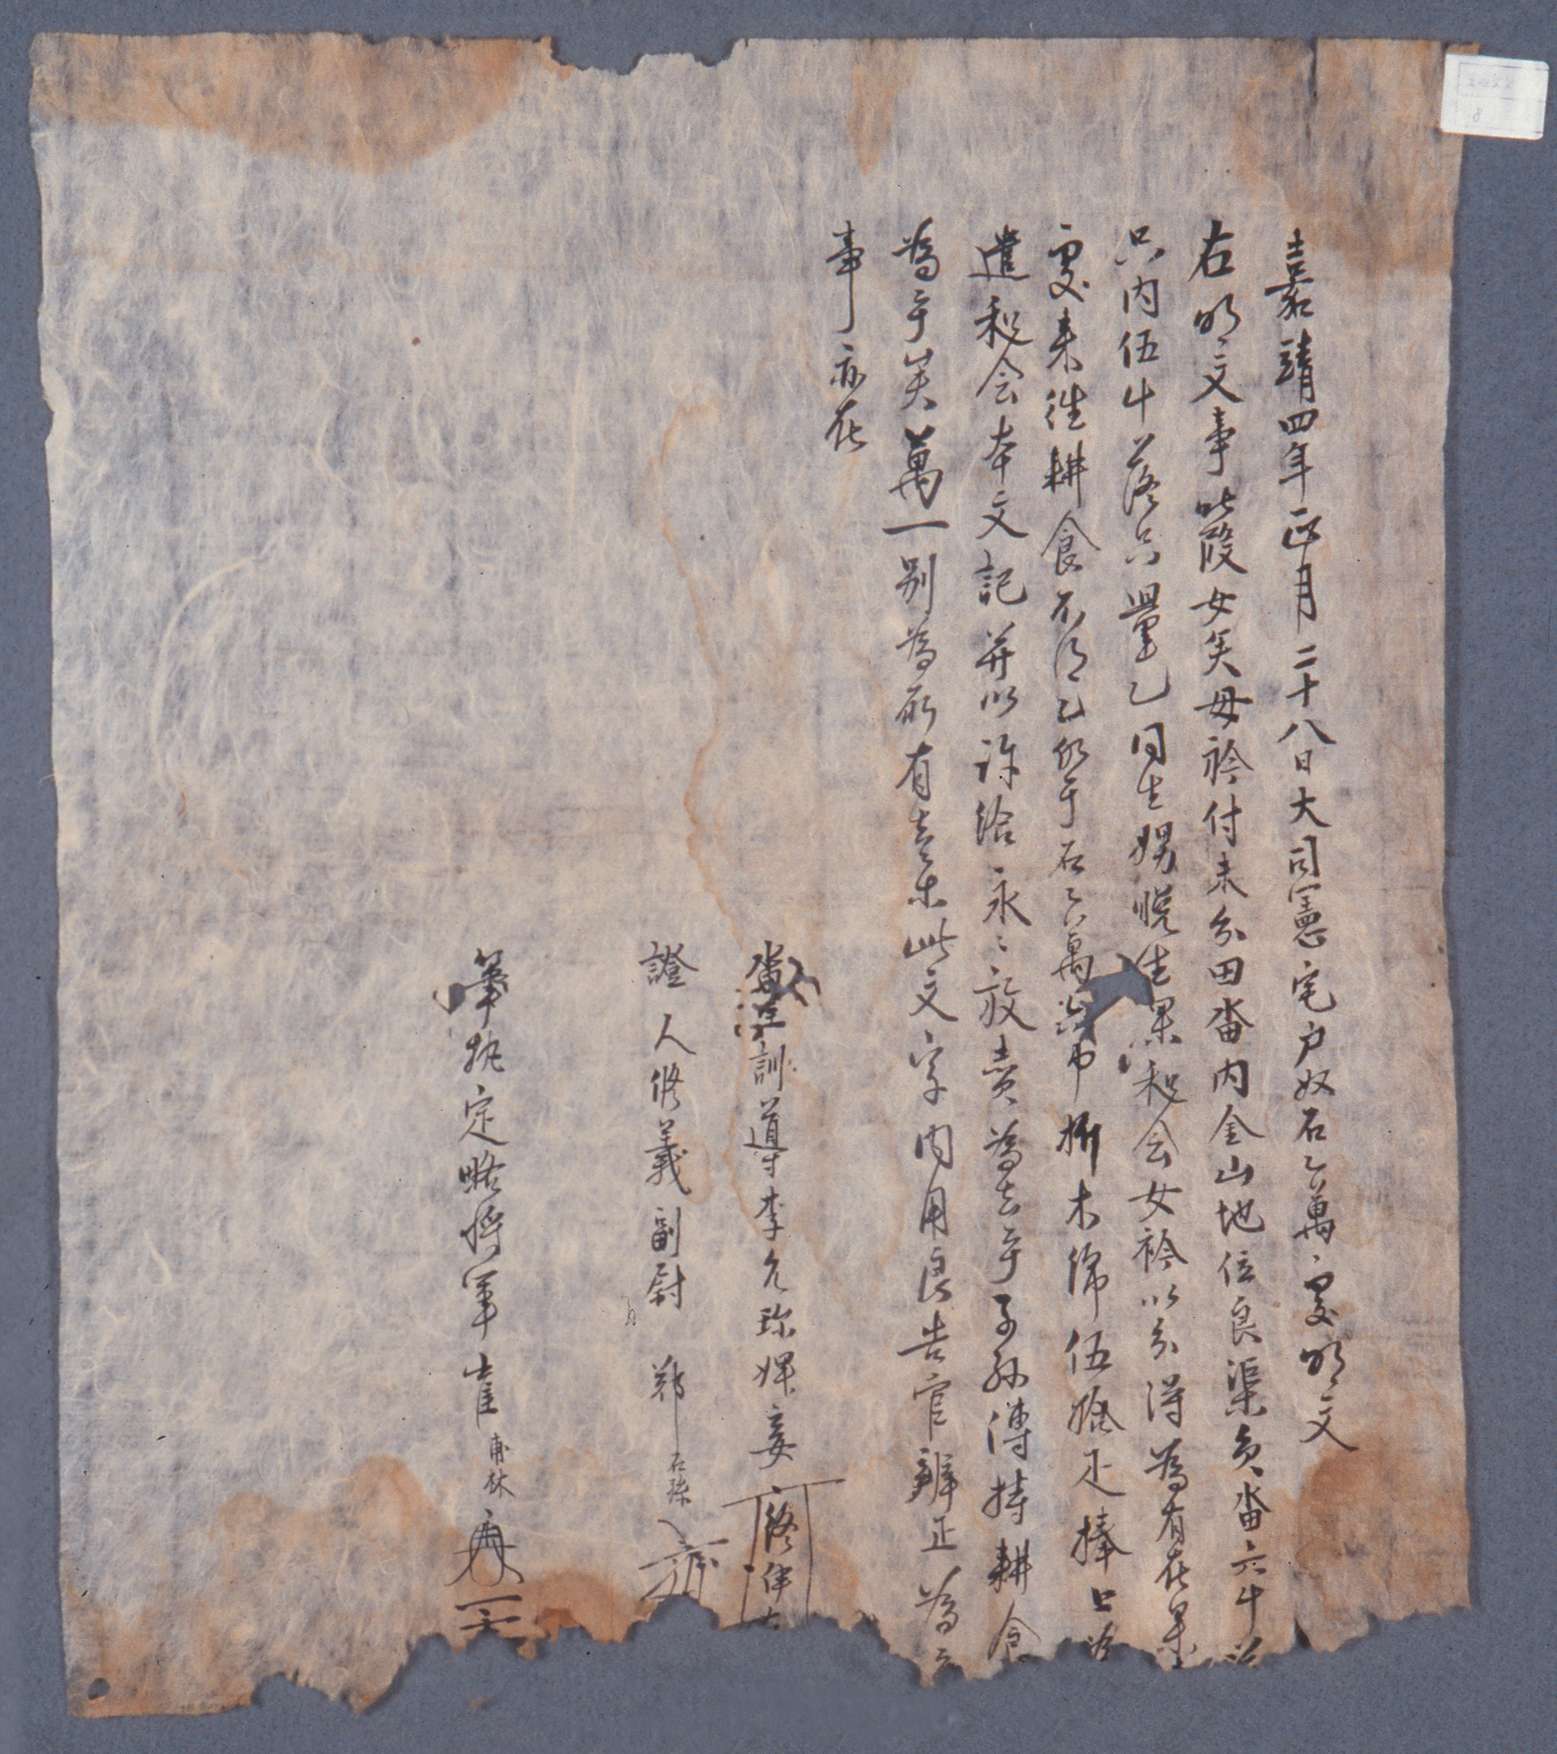 1525년에 비첩 종이(終伊)가 호노 돌만(乭萬)에게 논을 팔면서 작성해 준 토지매매명문